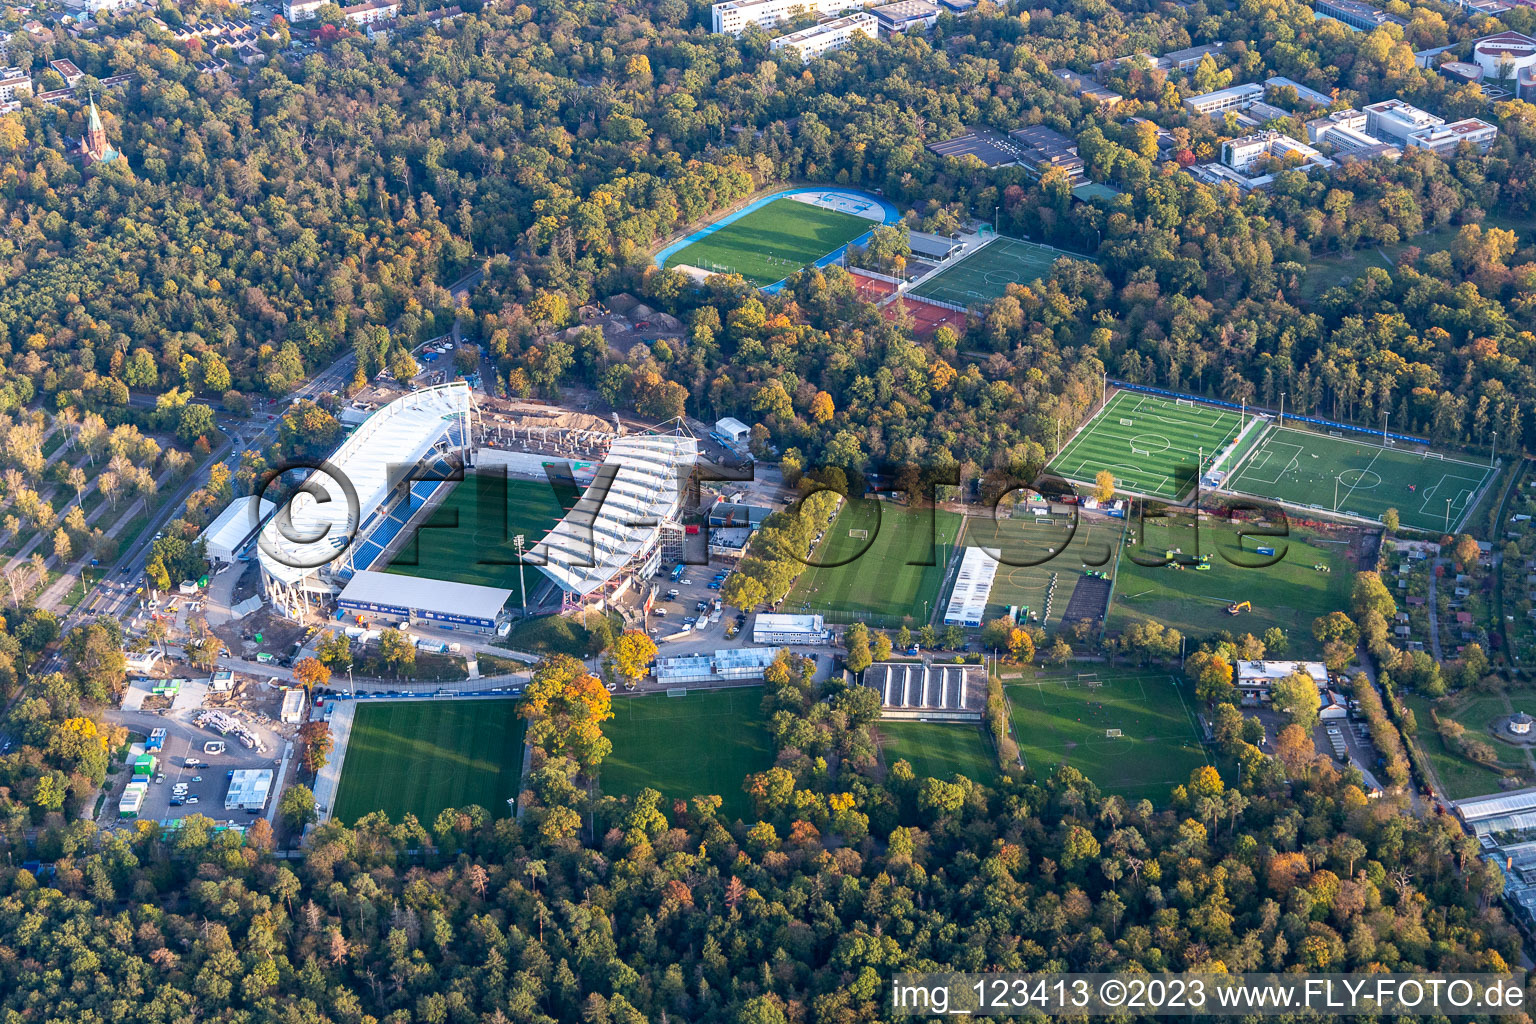 Photographie aérienne de Chantier pour la nouvelle construction du stade du parc animalier KSC à le quartier Innenstadt-Ost in Karlsruhe dans le département Bade-Wurtemberg, Allemagne